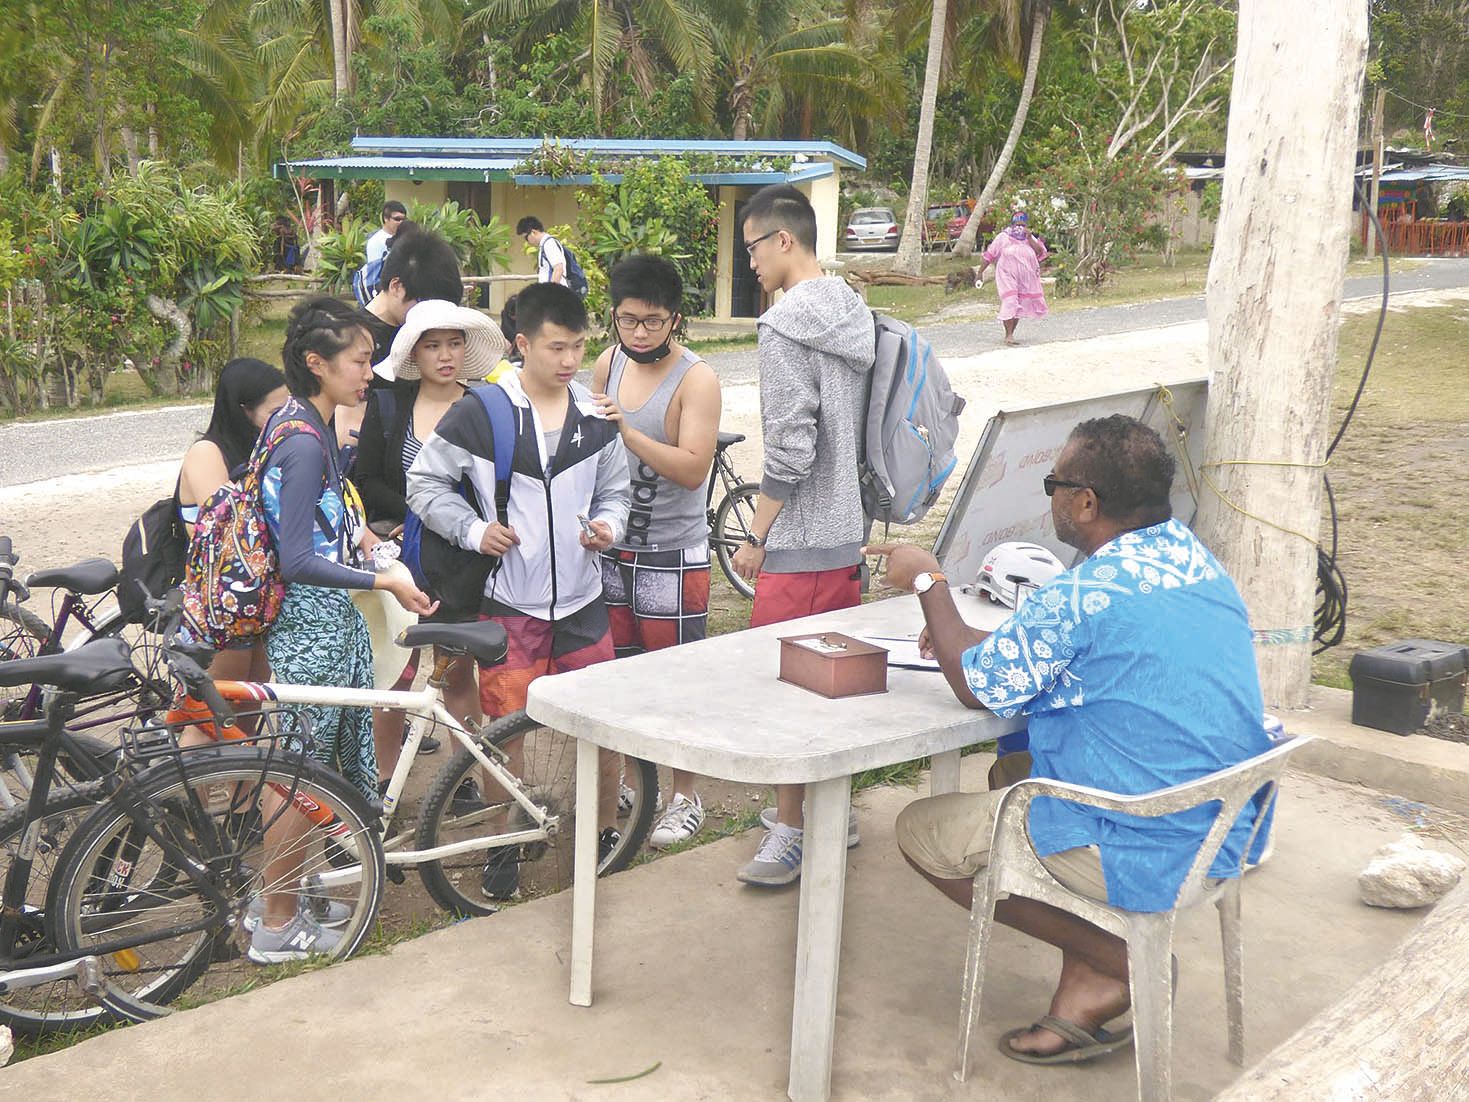 Fraîchement débarqués, des touristes ont visité les différents stands d’artisanat et de  restauration, tandis que d’autres ont privilégié la visite du site ou la location de vélos.